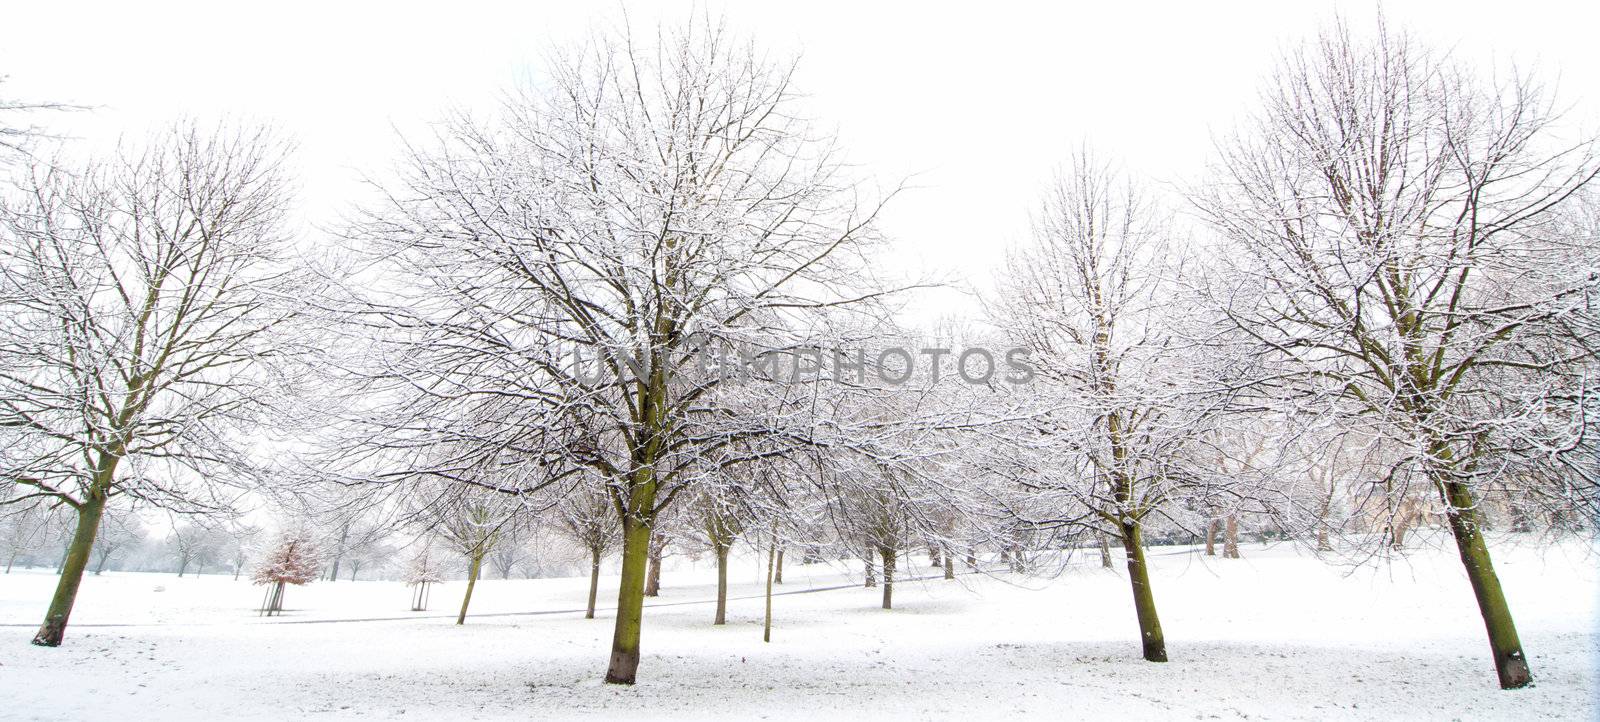 Winter trees  by unikpix